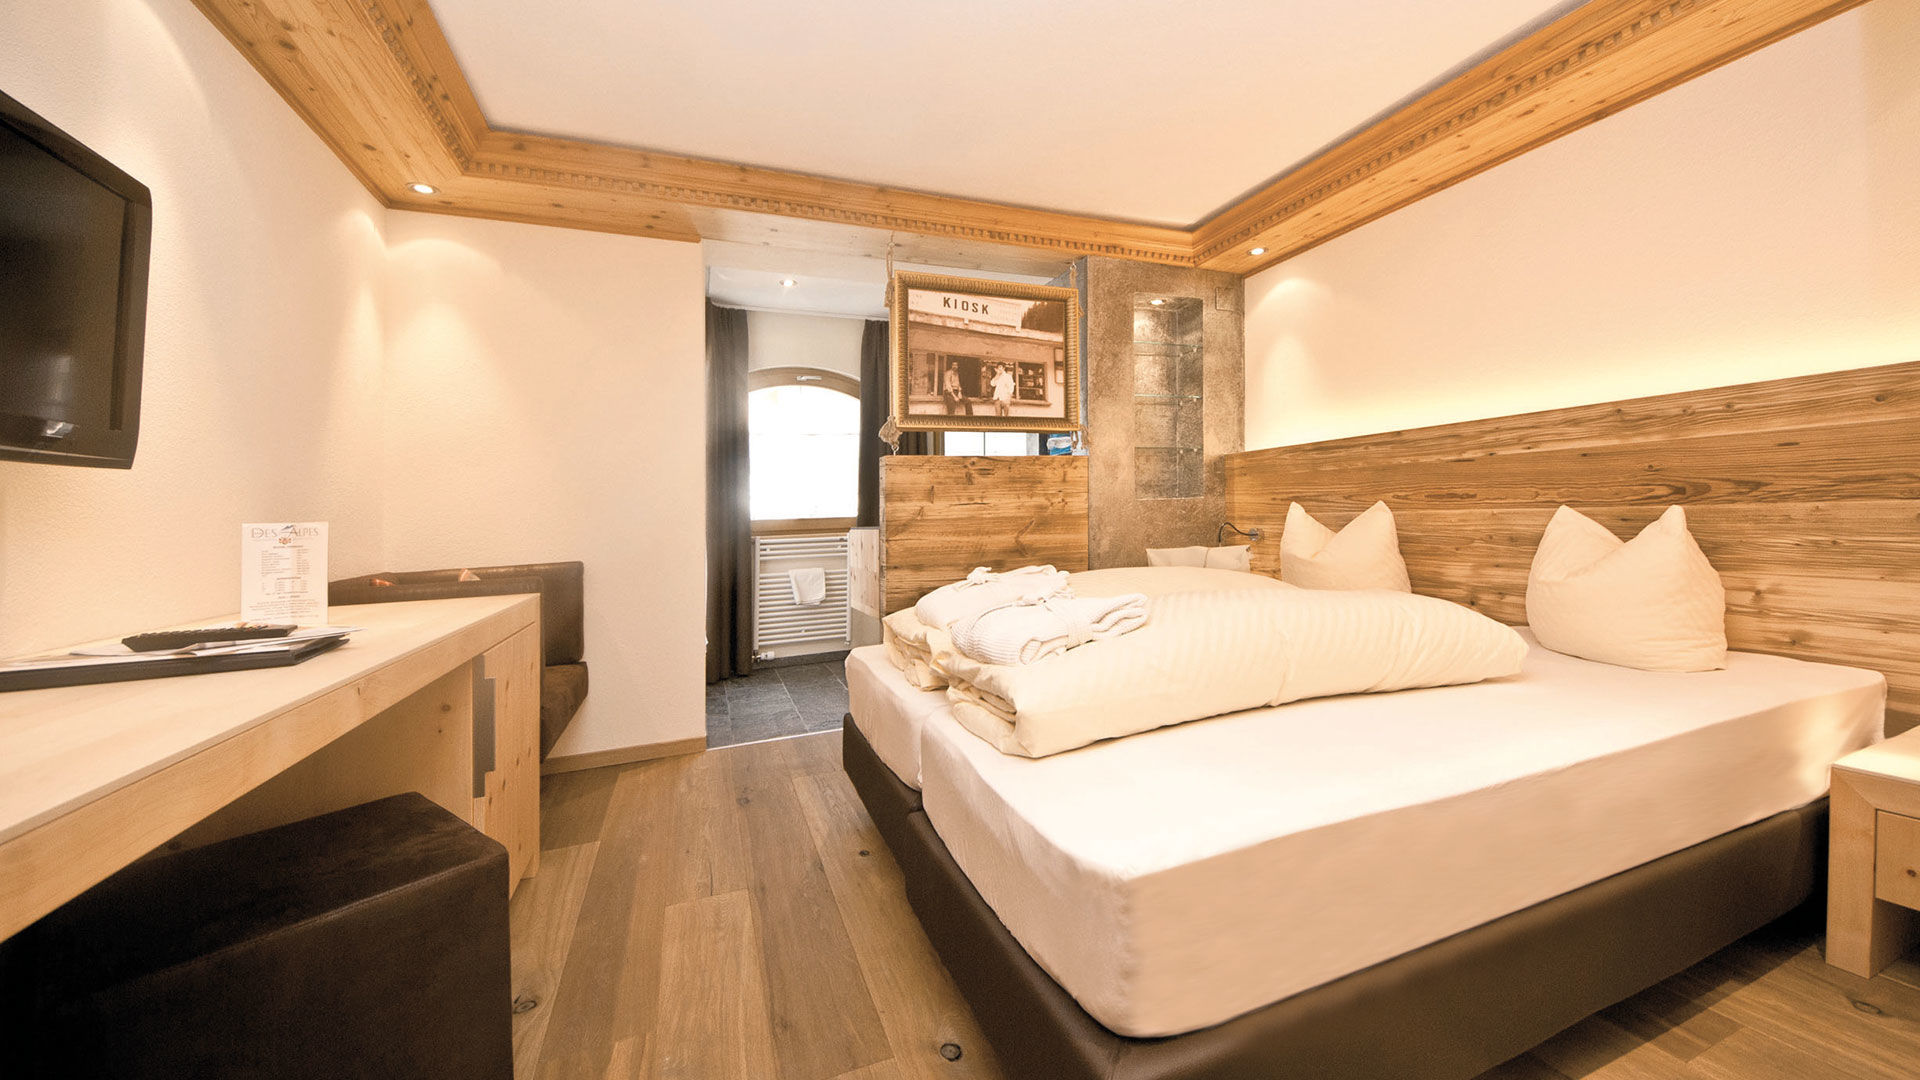  Junior Zimmer Hotel Des Alpes in Samnaun ©Des Alpes